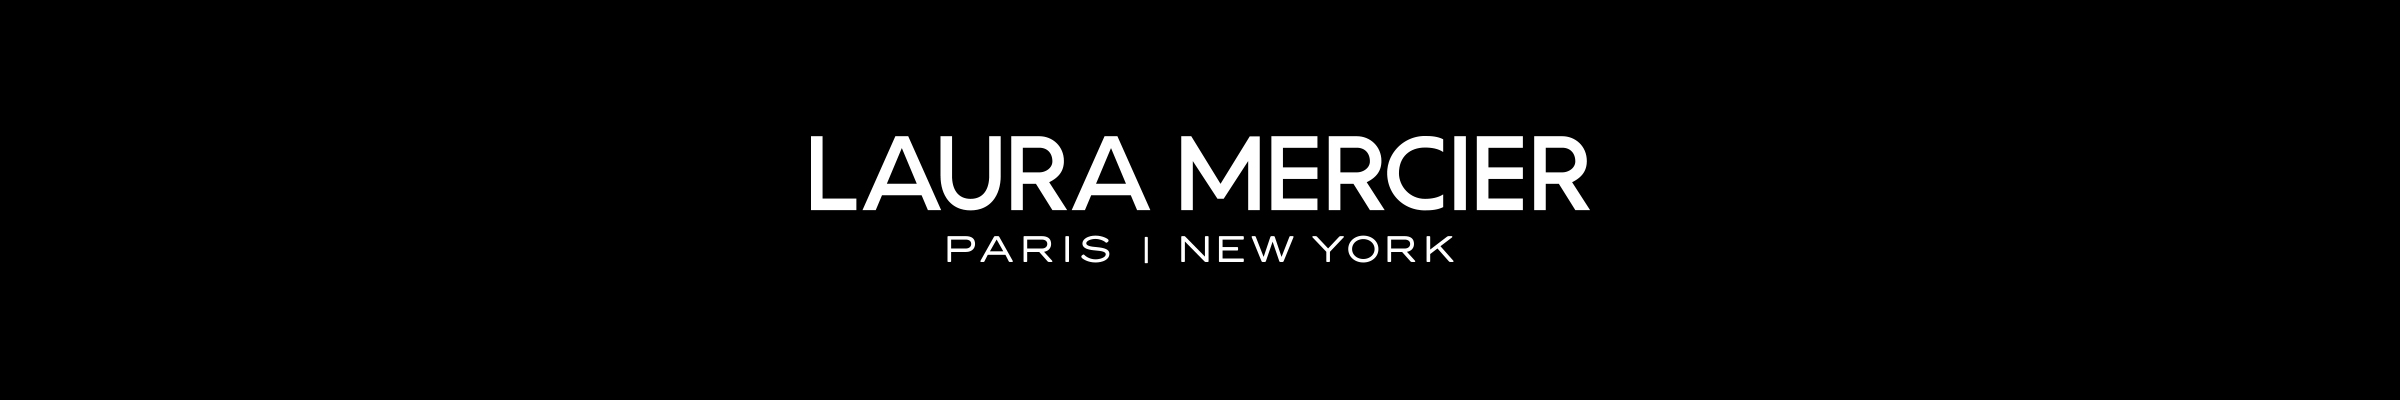 laura-mercier-banner